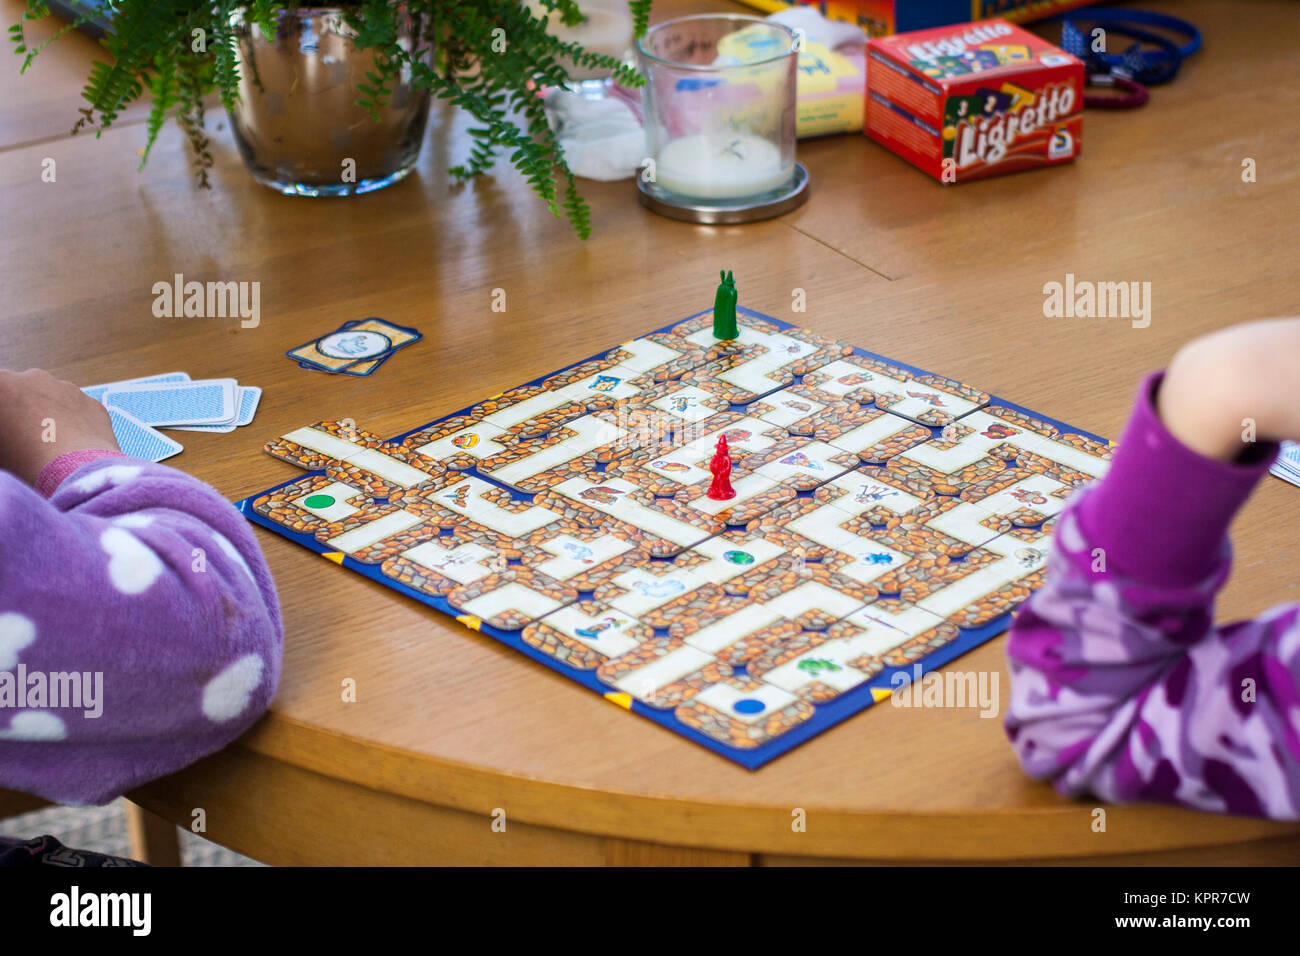 Bambini I bambini giocando ravensburger labirinto gioco di bordo, scheda di  gioco i bambini, e per il divertimento di tutta la famiglia, il concetto di  famiglia, giochi da tavola, Natale Foto stock 